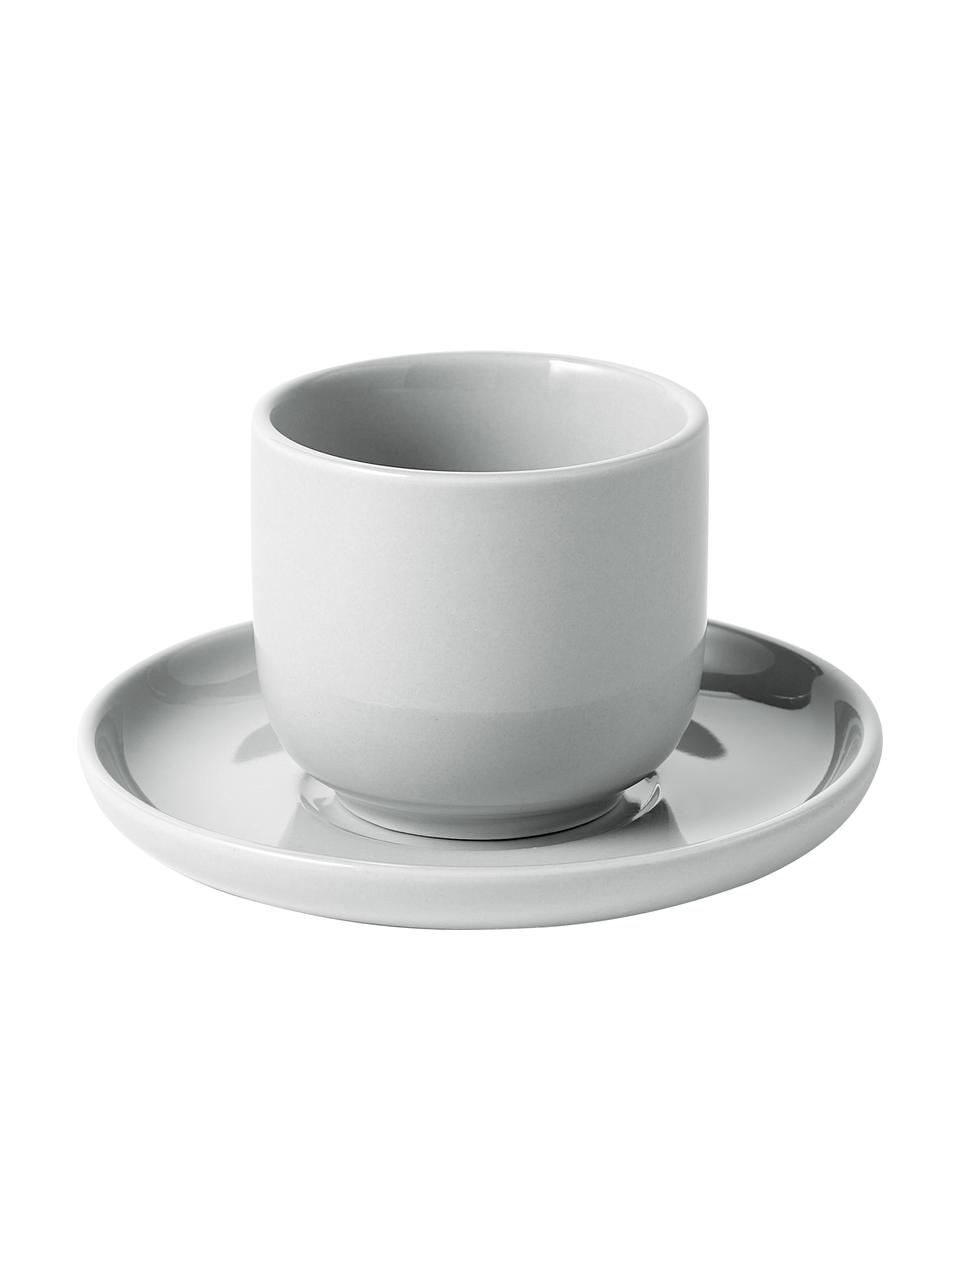 Tazzina caffè in porcellana con piattino Nessa 4 pz, Porcellana a pasta dura di alta qualità, Grigio chiaro, Ø 7 x Alt. 6 cm